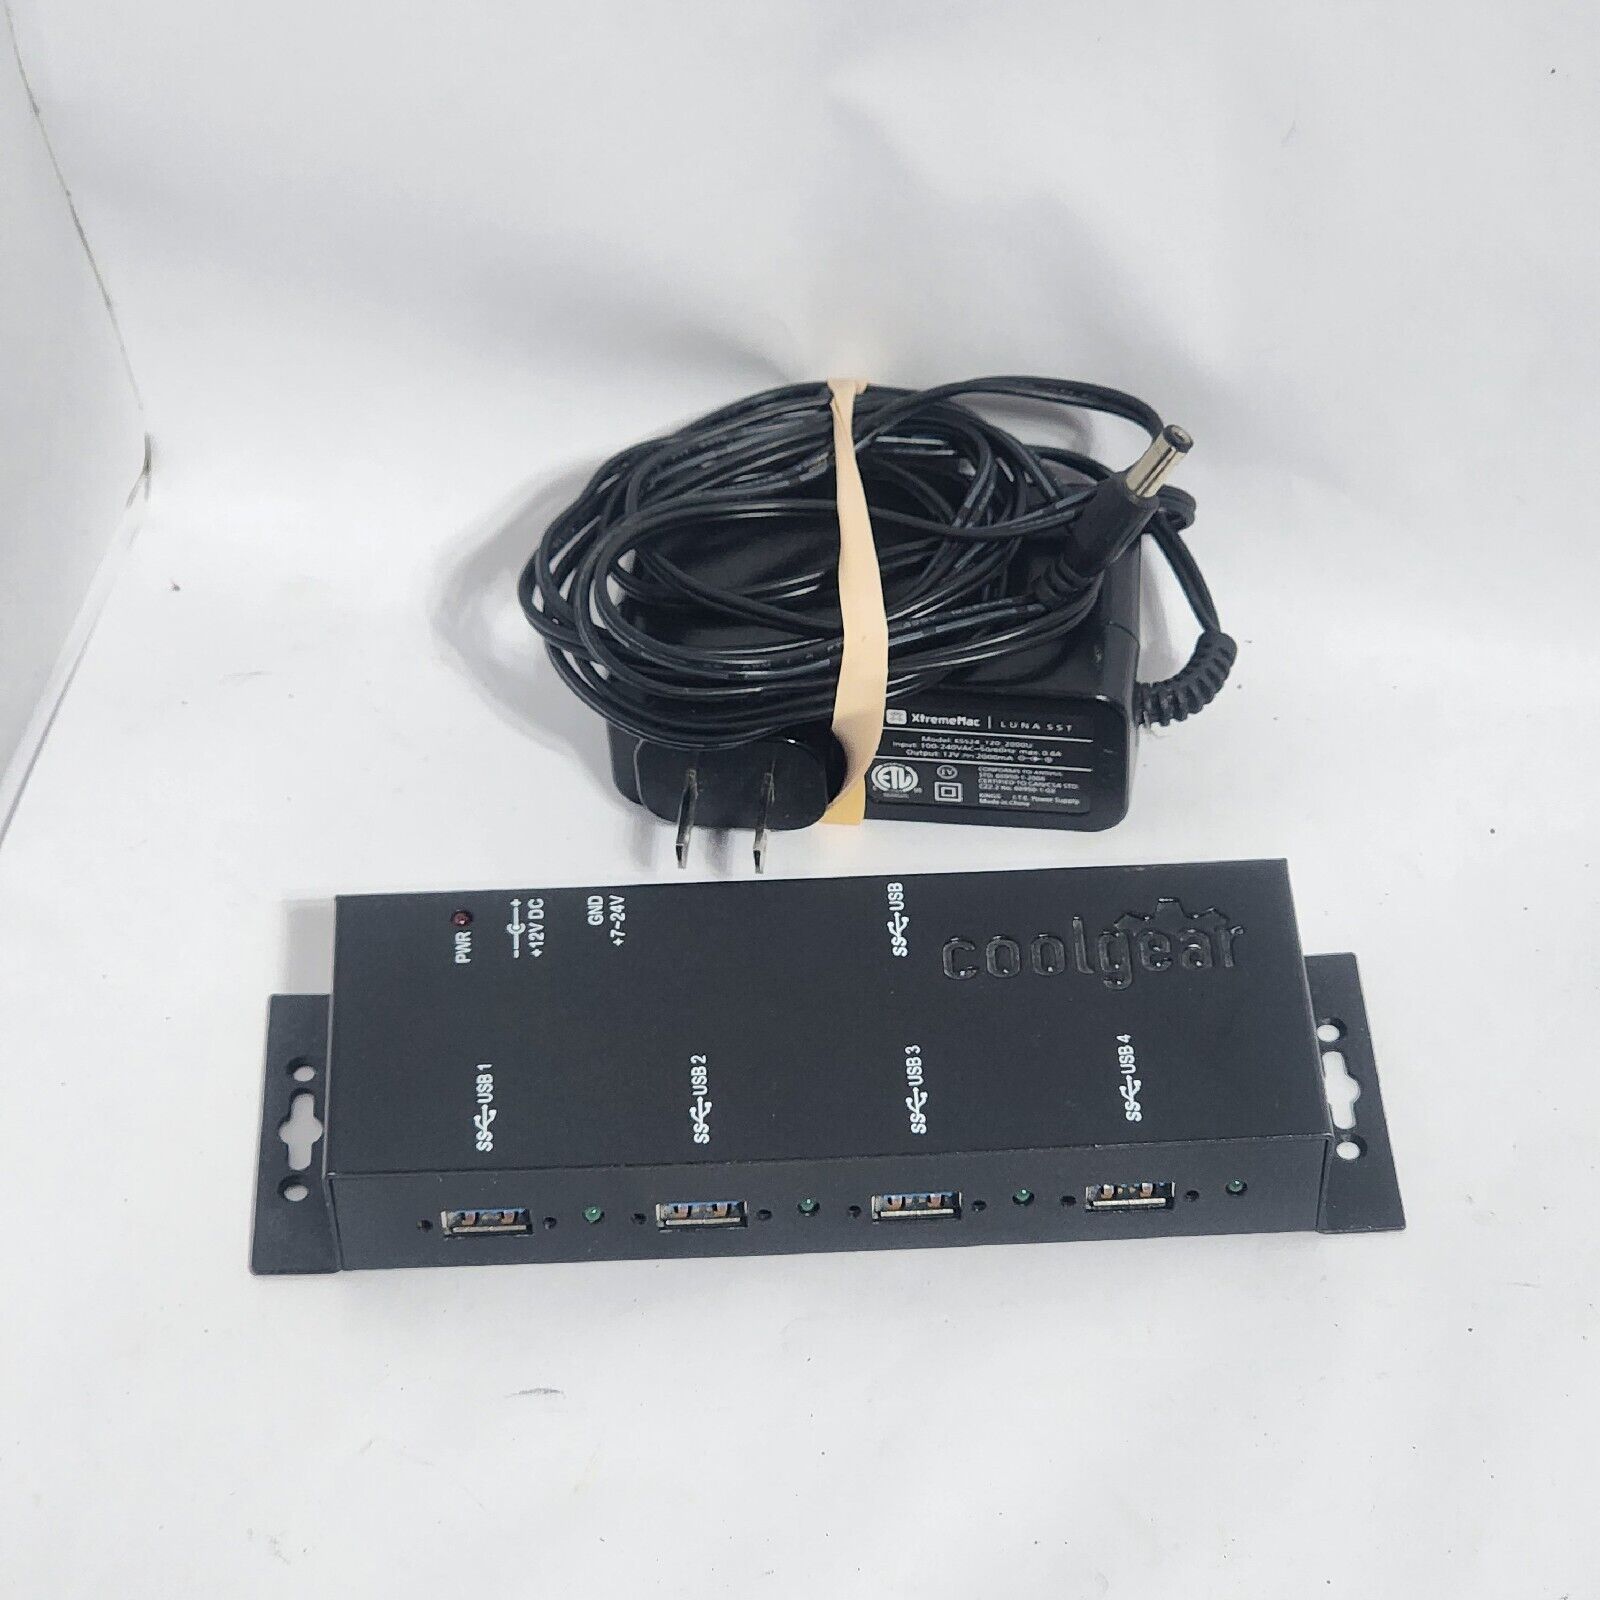 COOLGEAR USBG-3X4M 4 PORT USB 3.0 METAL HUB 